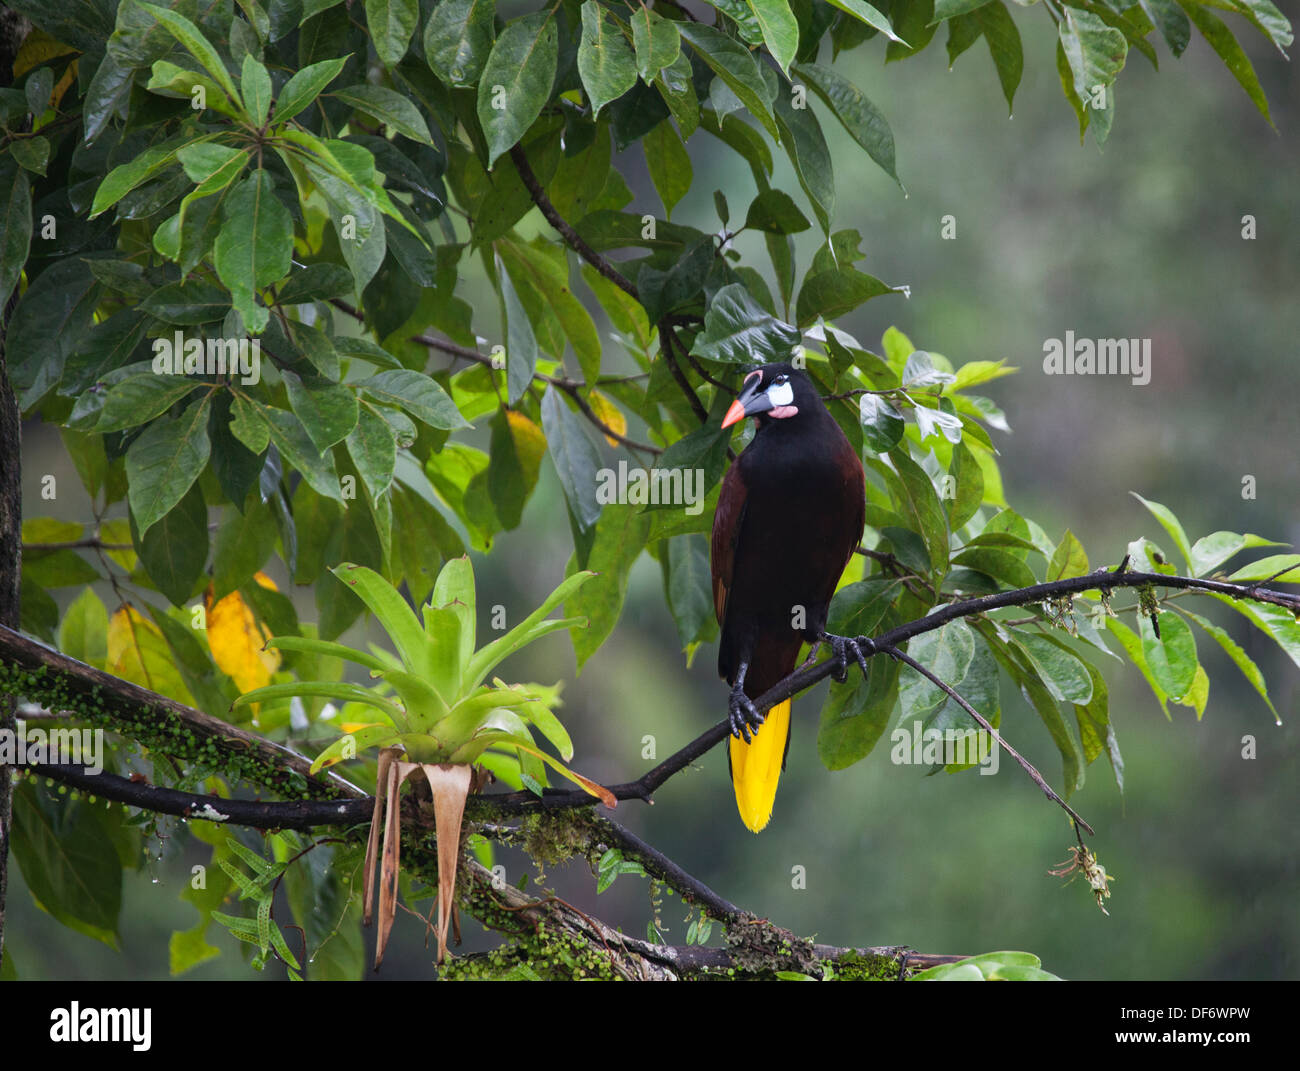 Montezuma-Oropendola-Vogel (Psarocolius montezuma), hoch oben auf einem Ast in einem tropischen Regenwaldddddach im Norden Costa Ricas Stockfoto